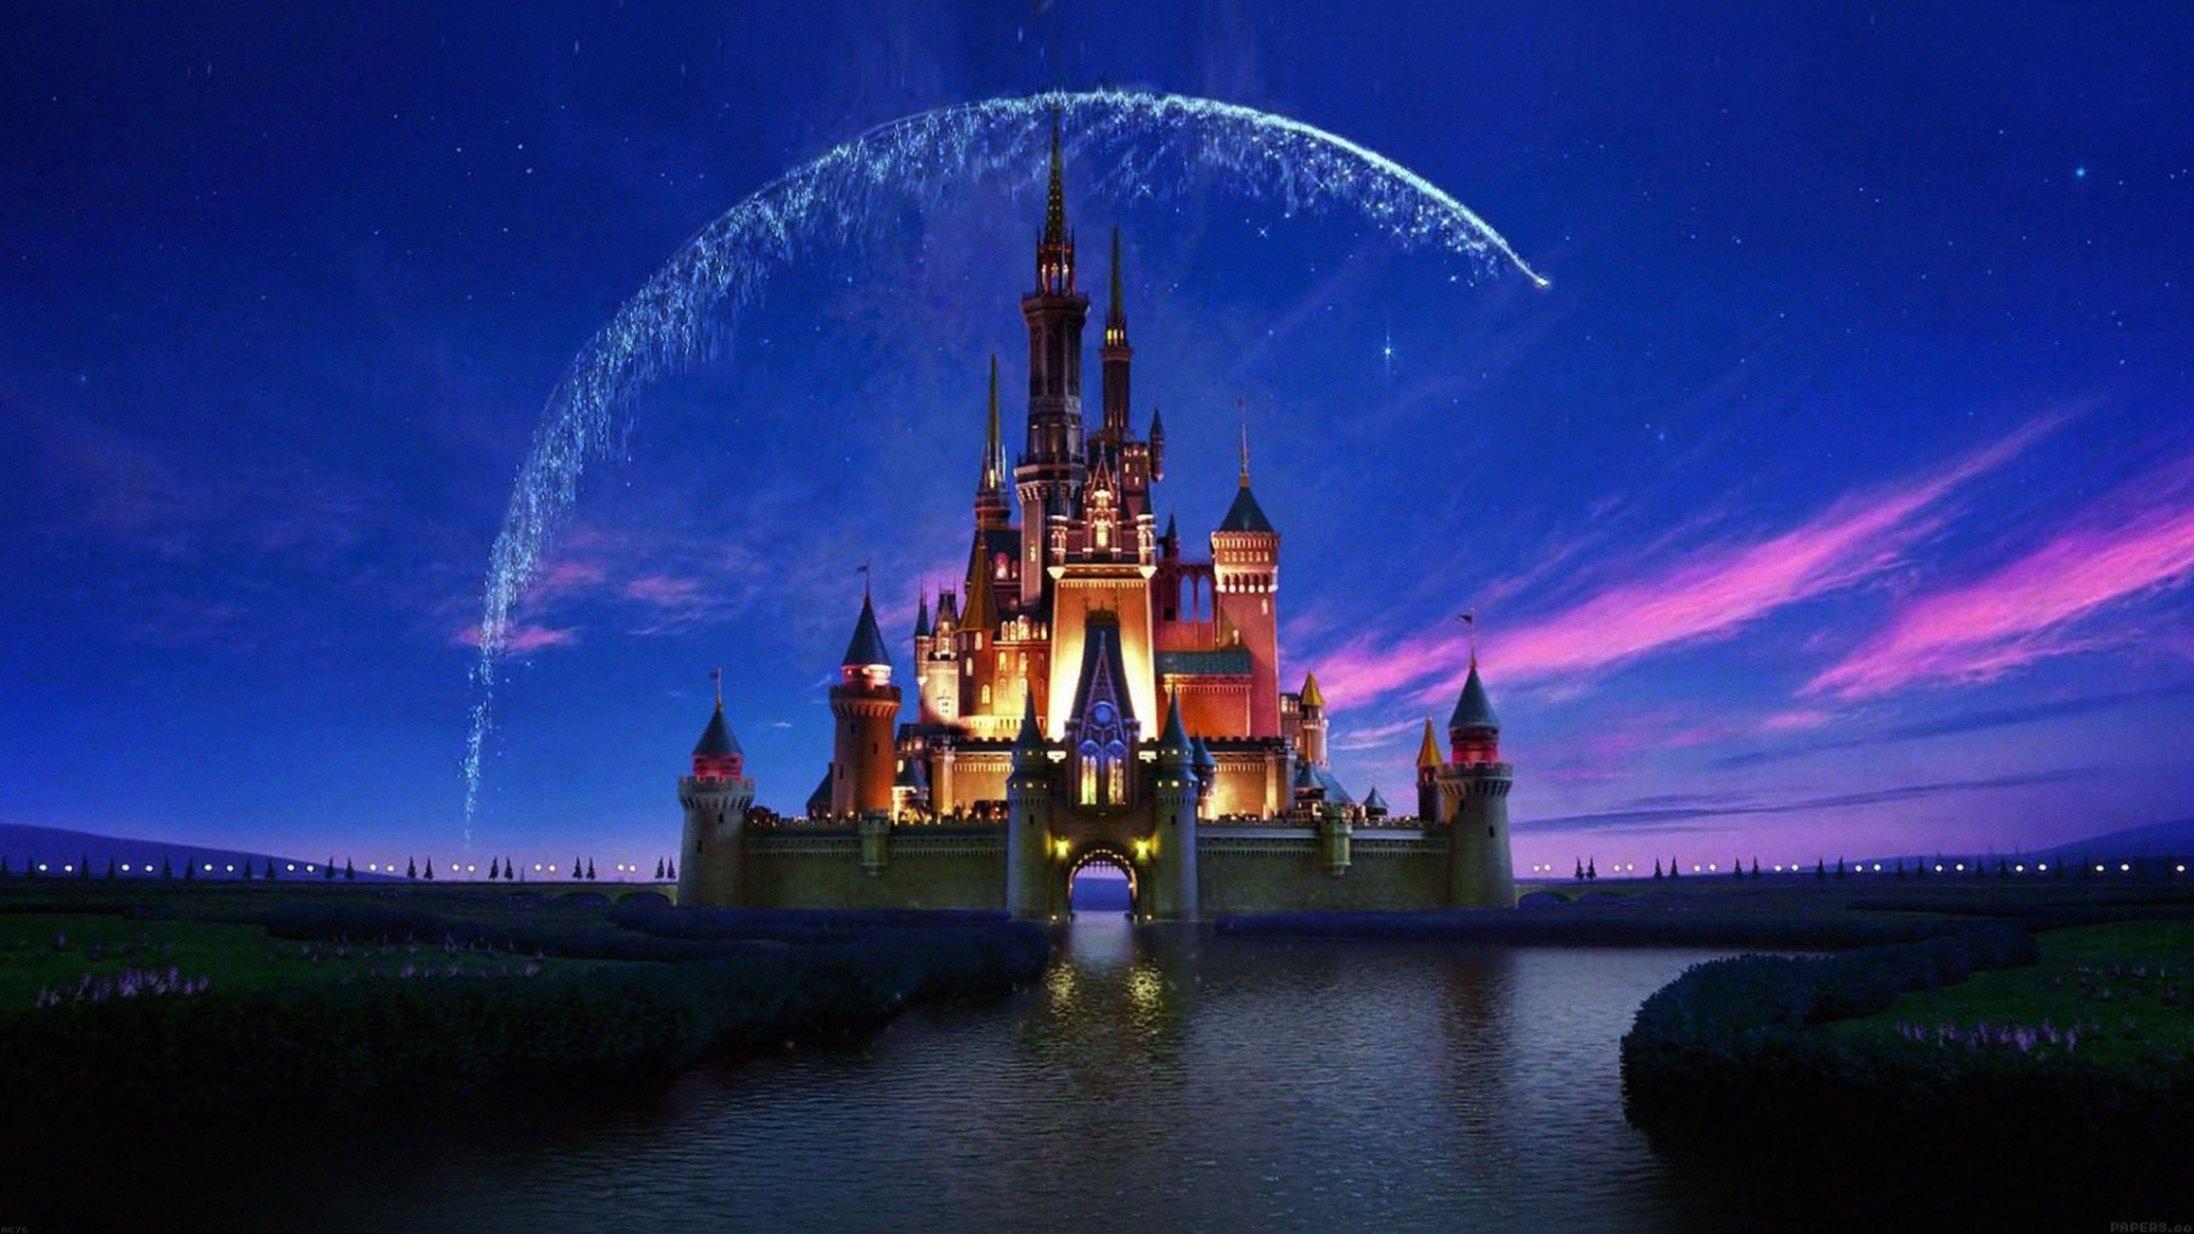 Валт дисней. Уолт Дисней Пикчерз наоборот замок. Киностудия Walt Disney. Студия Уолта Диснея. Заставка Уолт Дисней замок.